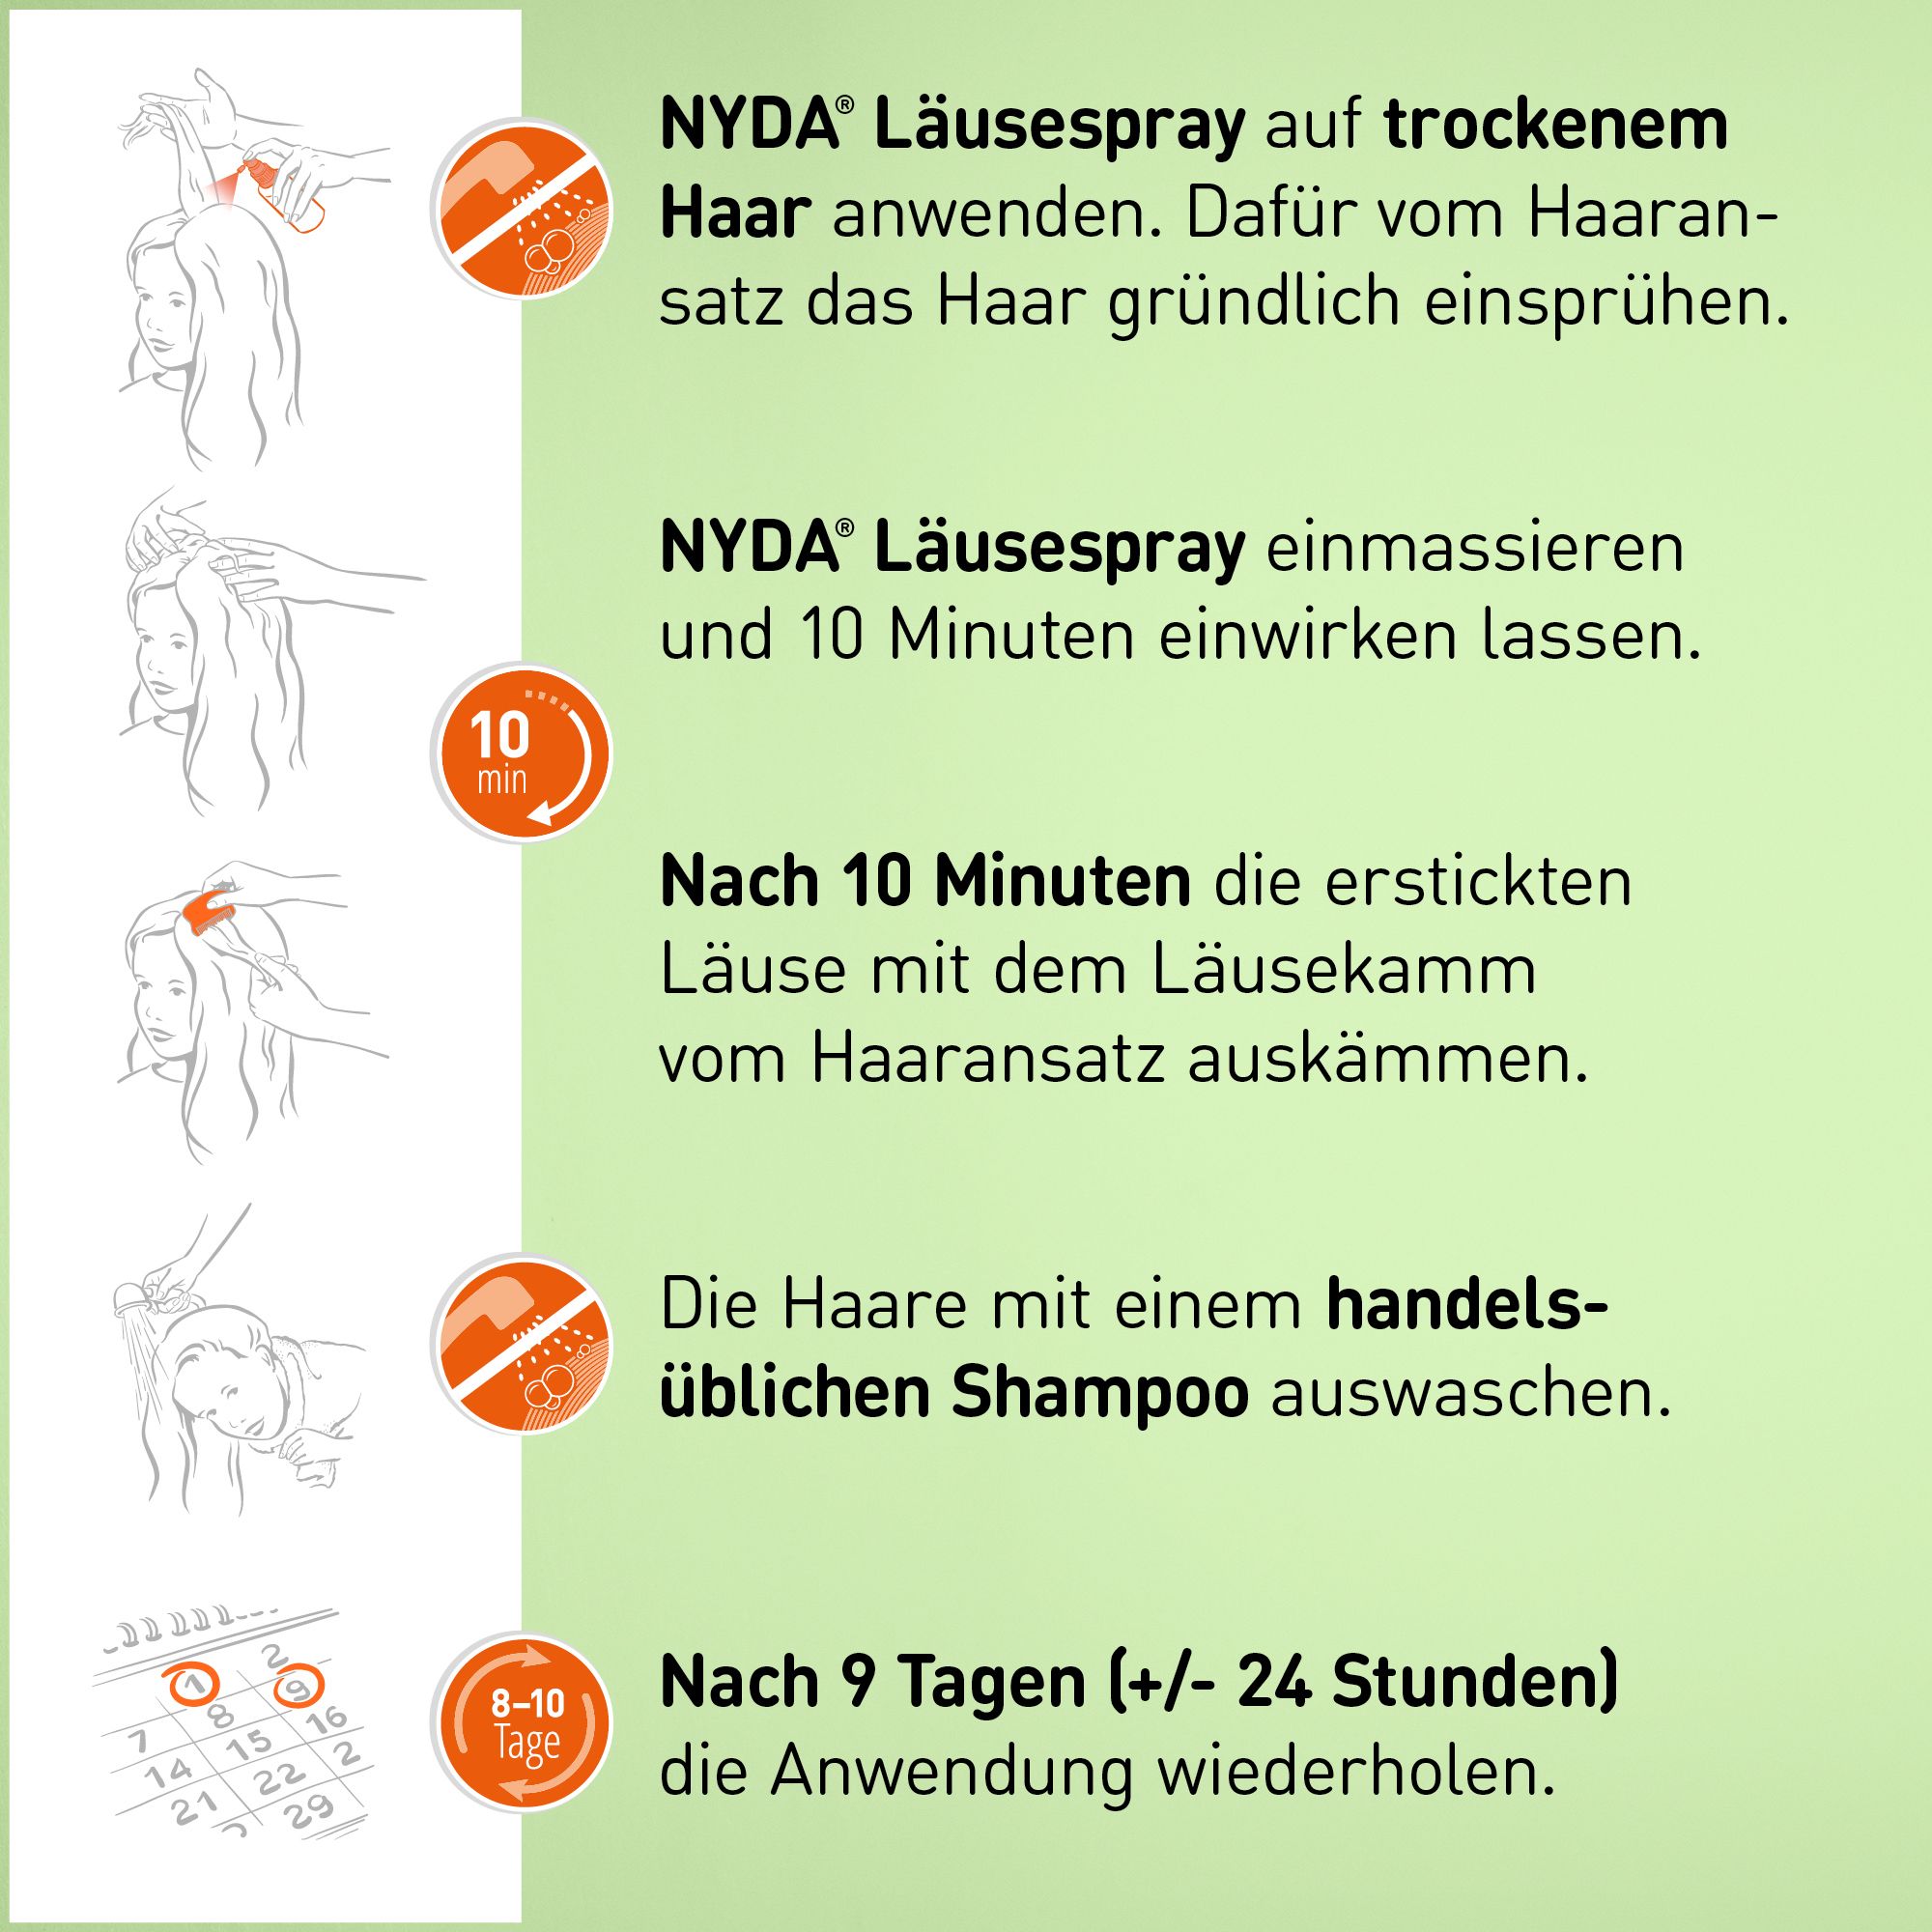 NYDA Läusespray gegen Köpfläuse & Nissen